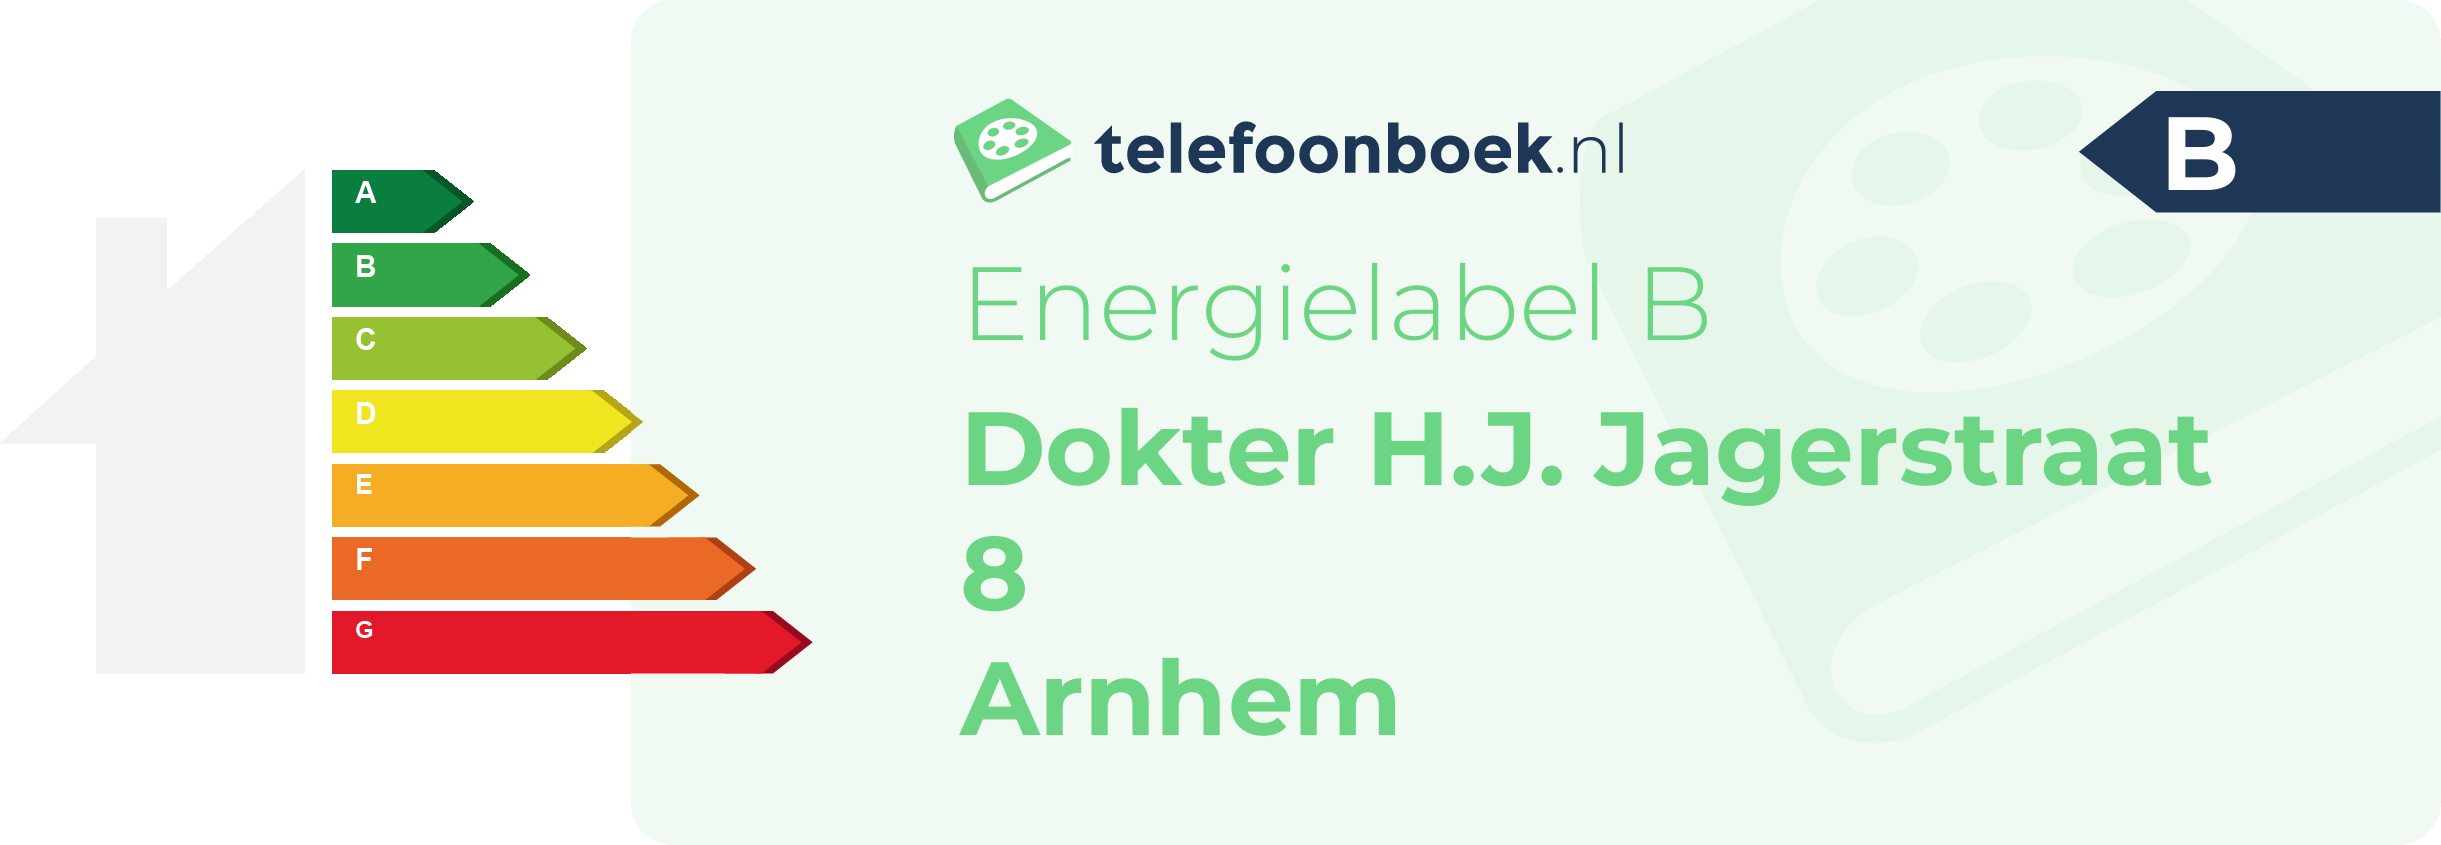 Energielabel Dokter H.J. Jagerstraat 8 Arnhem